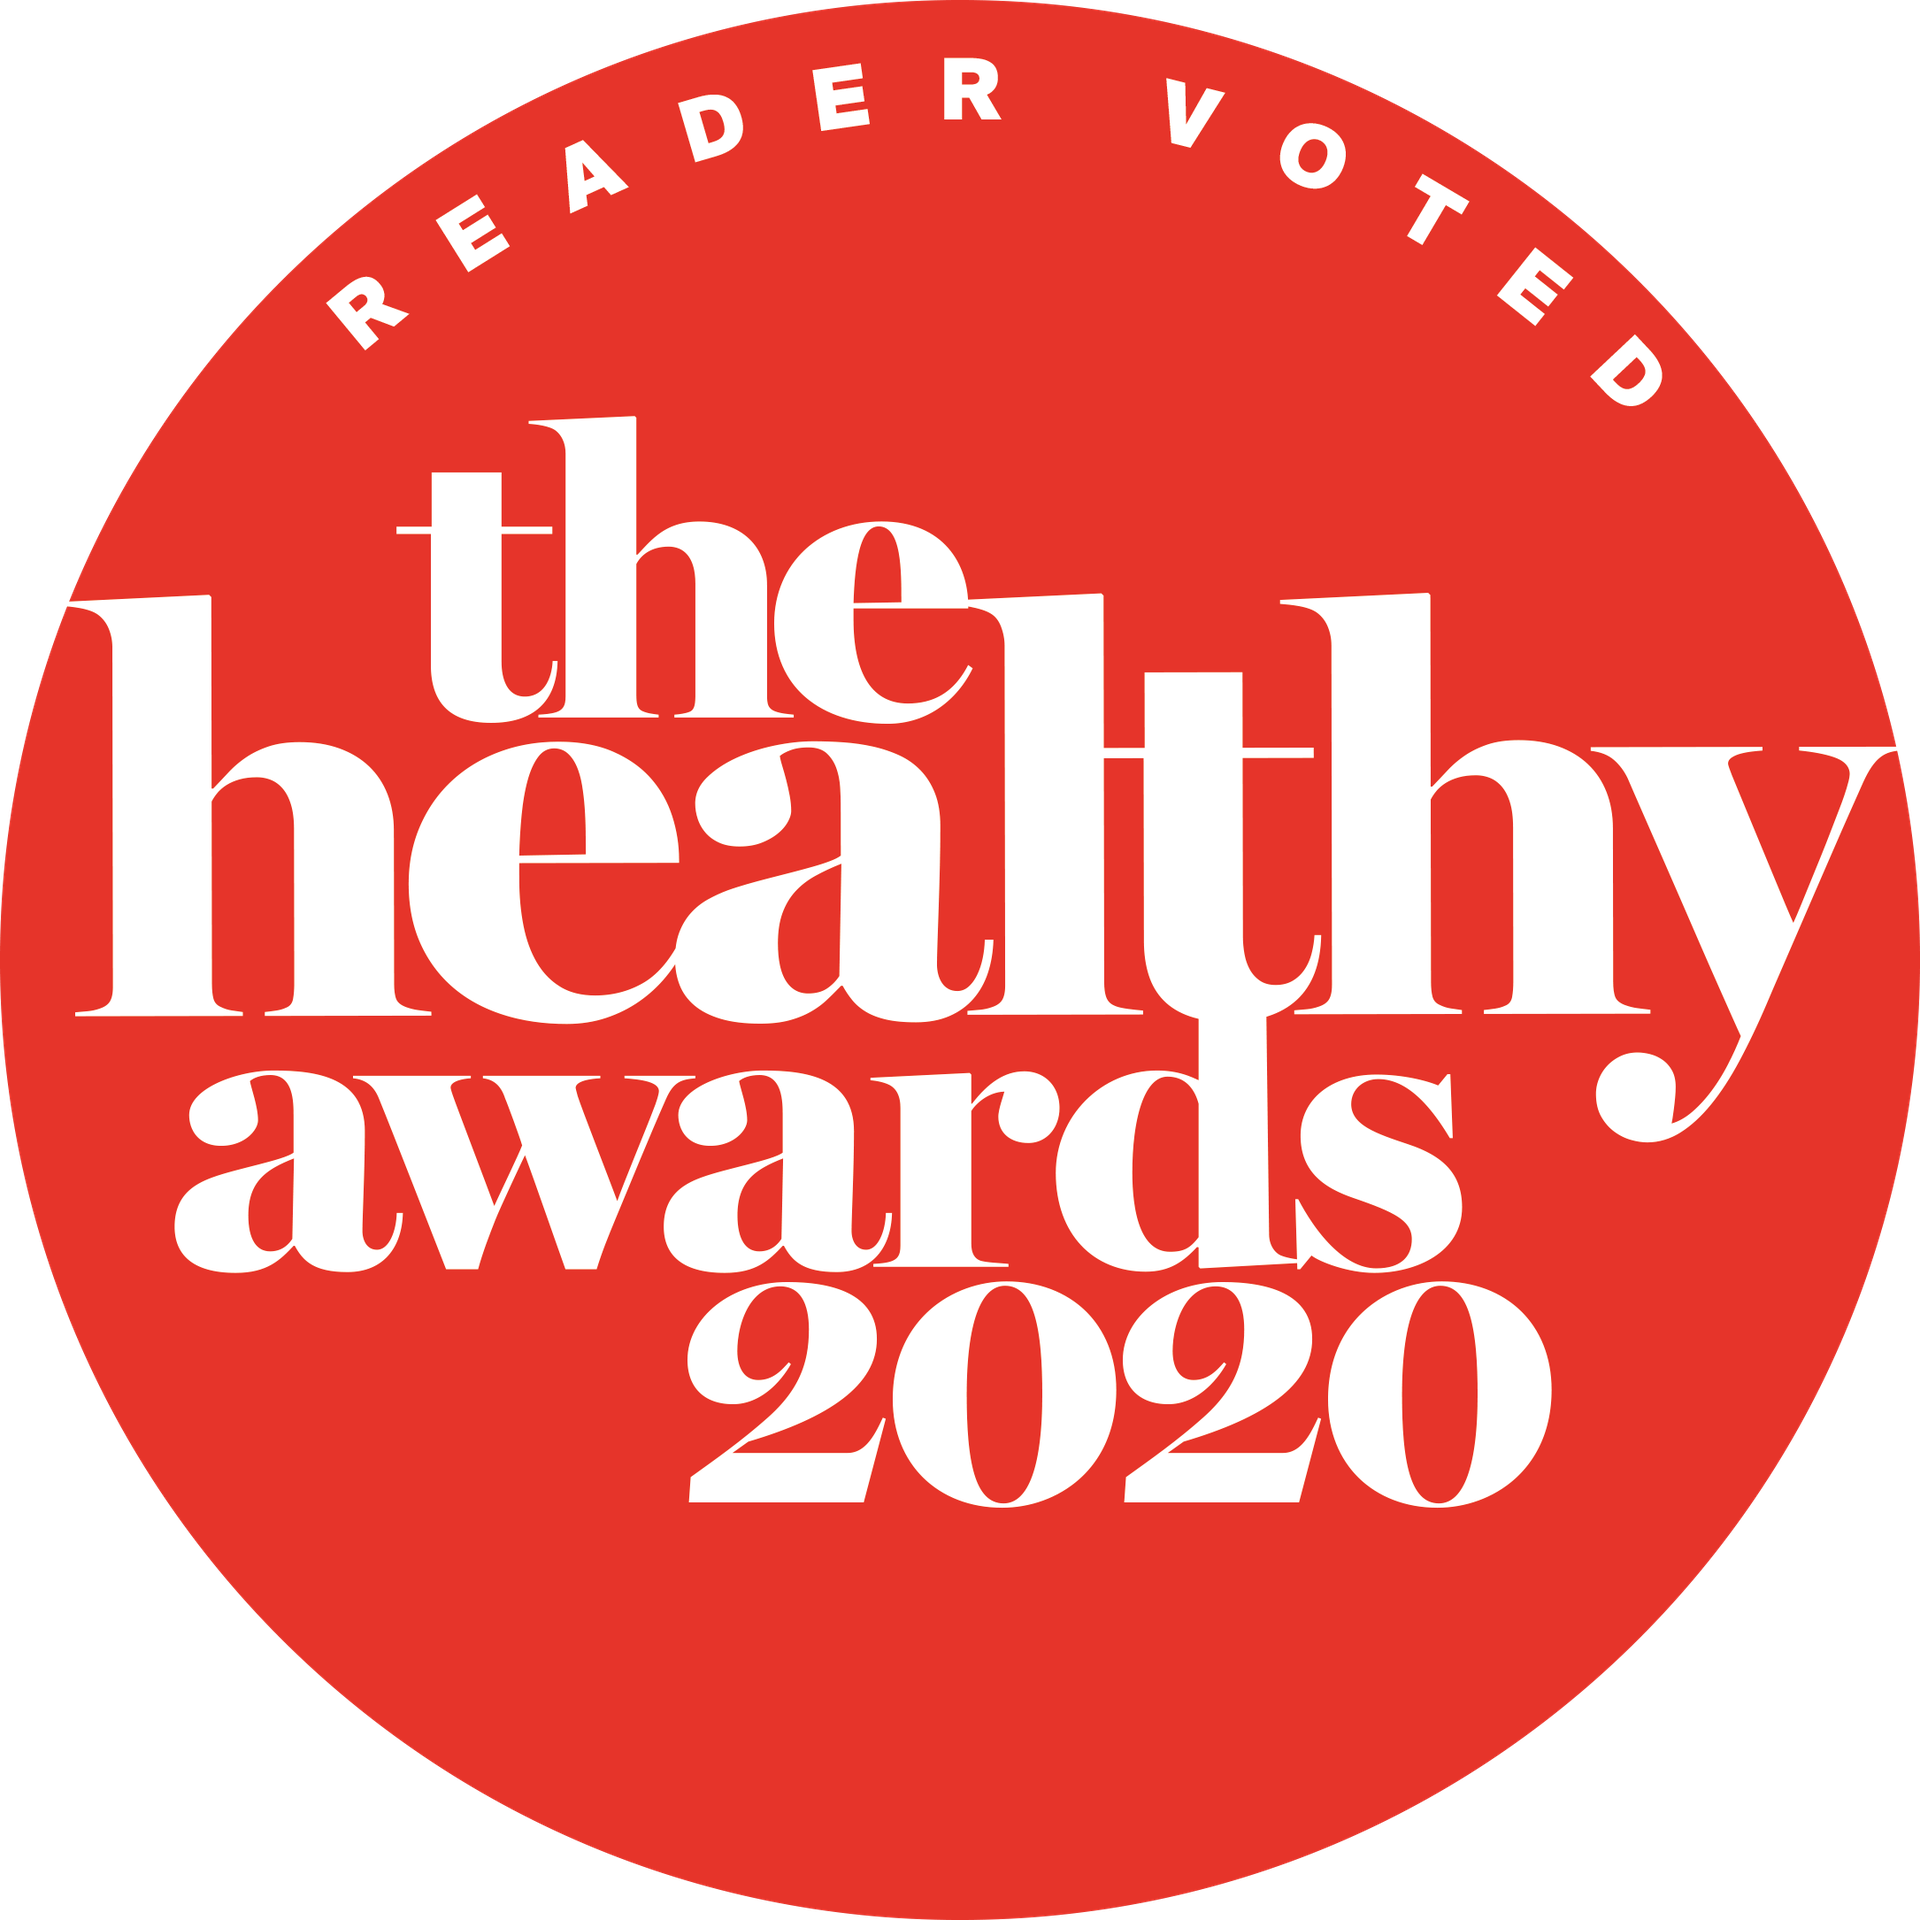 The Healthy Awards 2020 logo